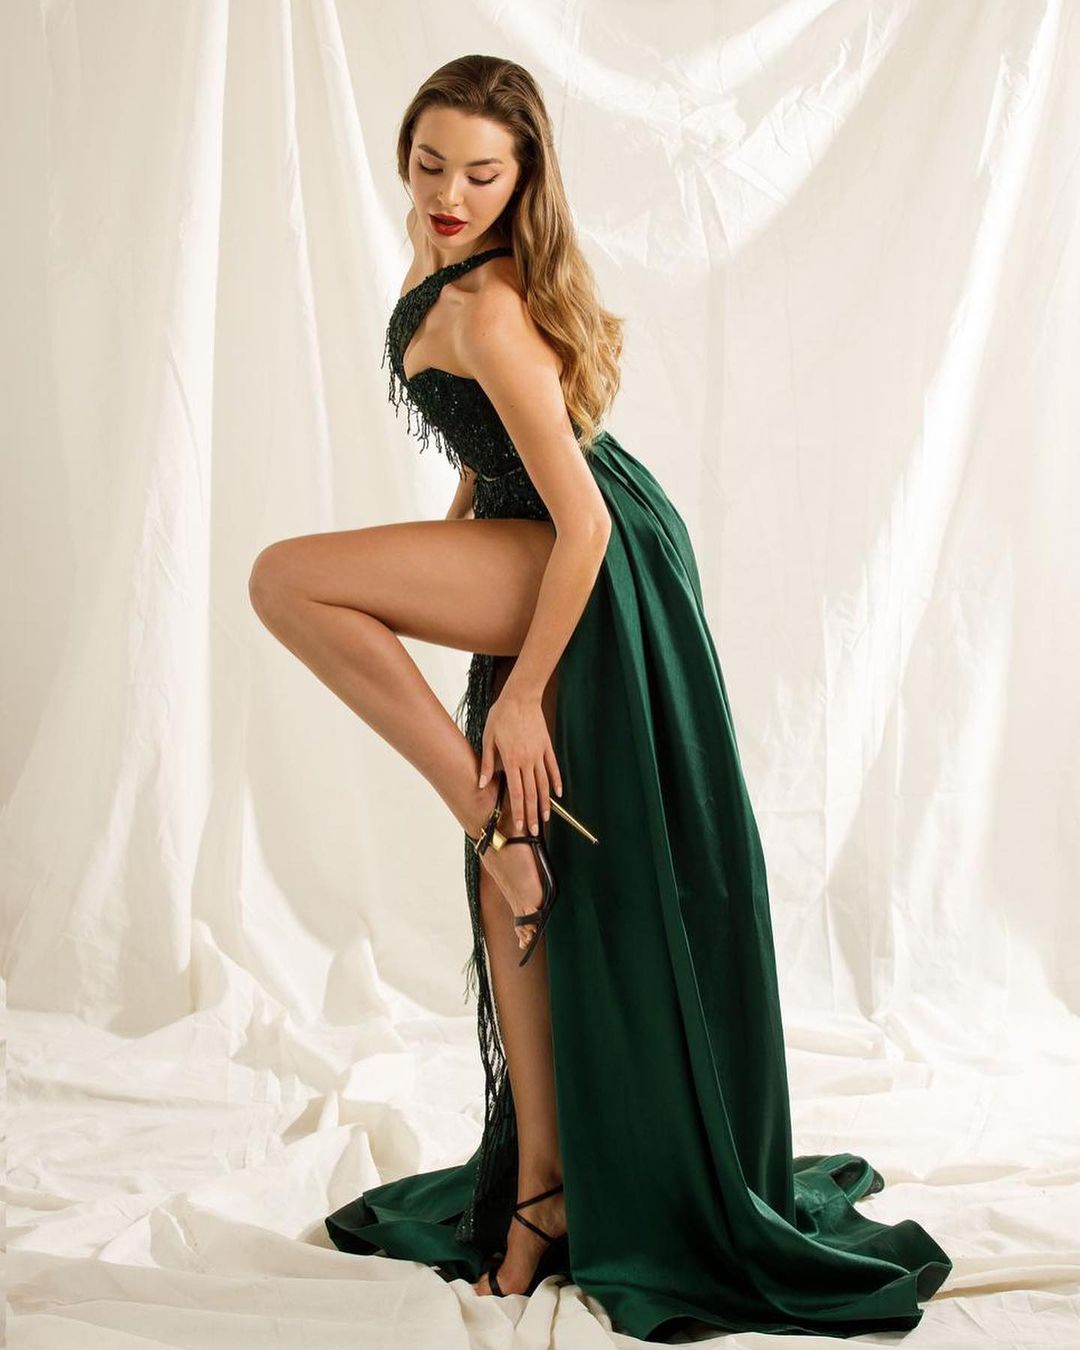 "Hoa hậu nhà giàu" Tây Ban Nha mặc gì cũng đẹp hơn người vì cao 1m75, body chuẩn mực - 4